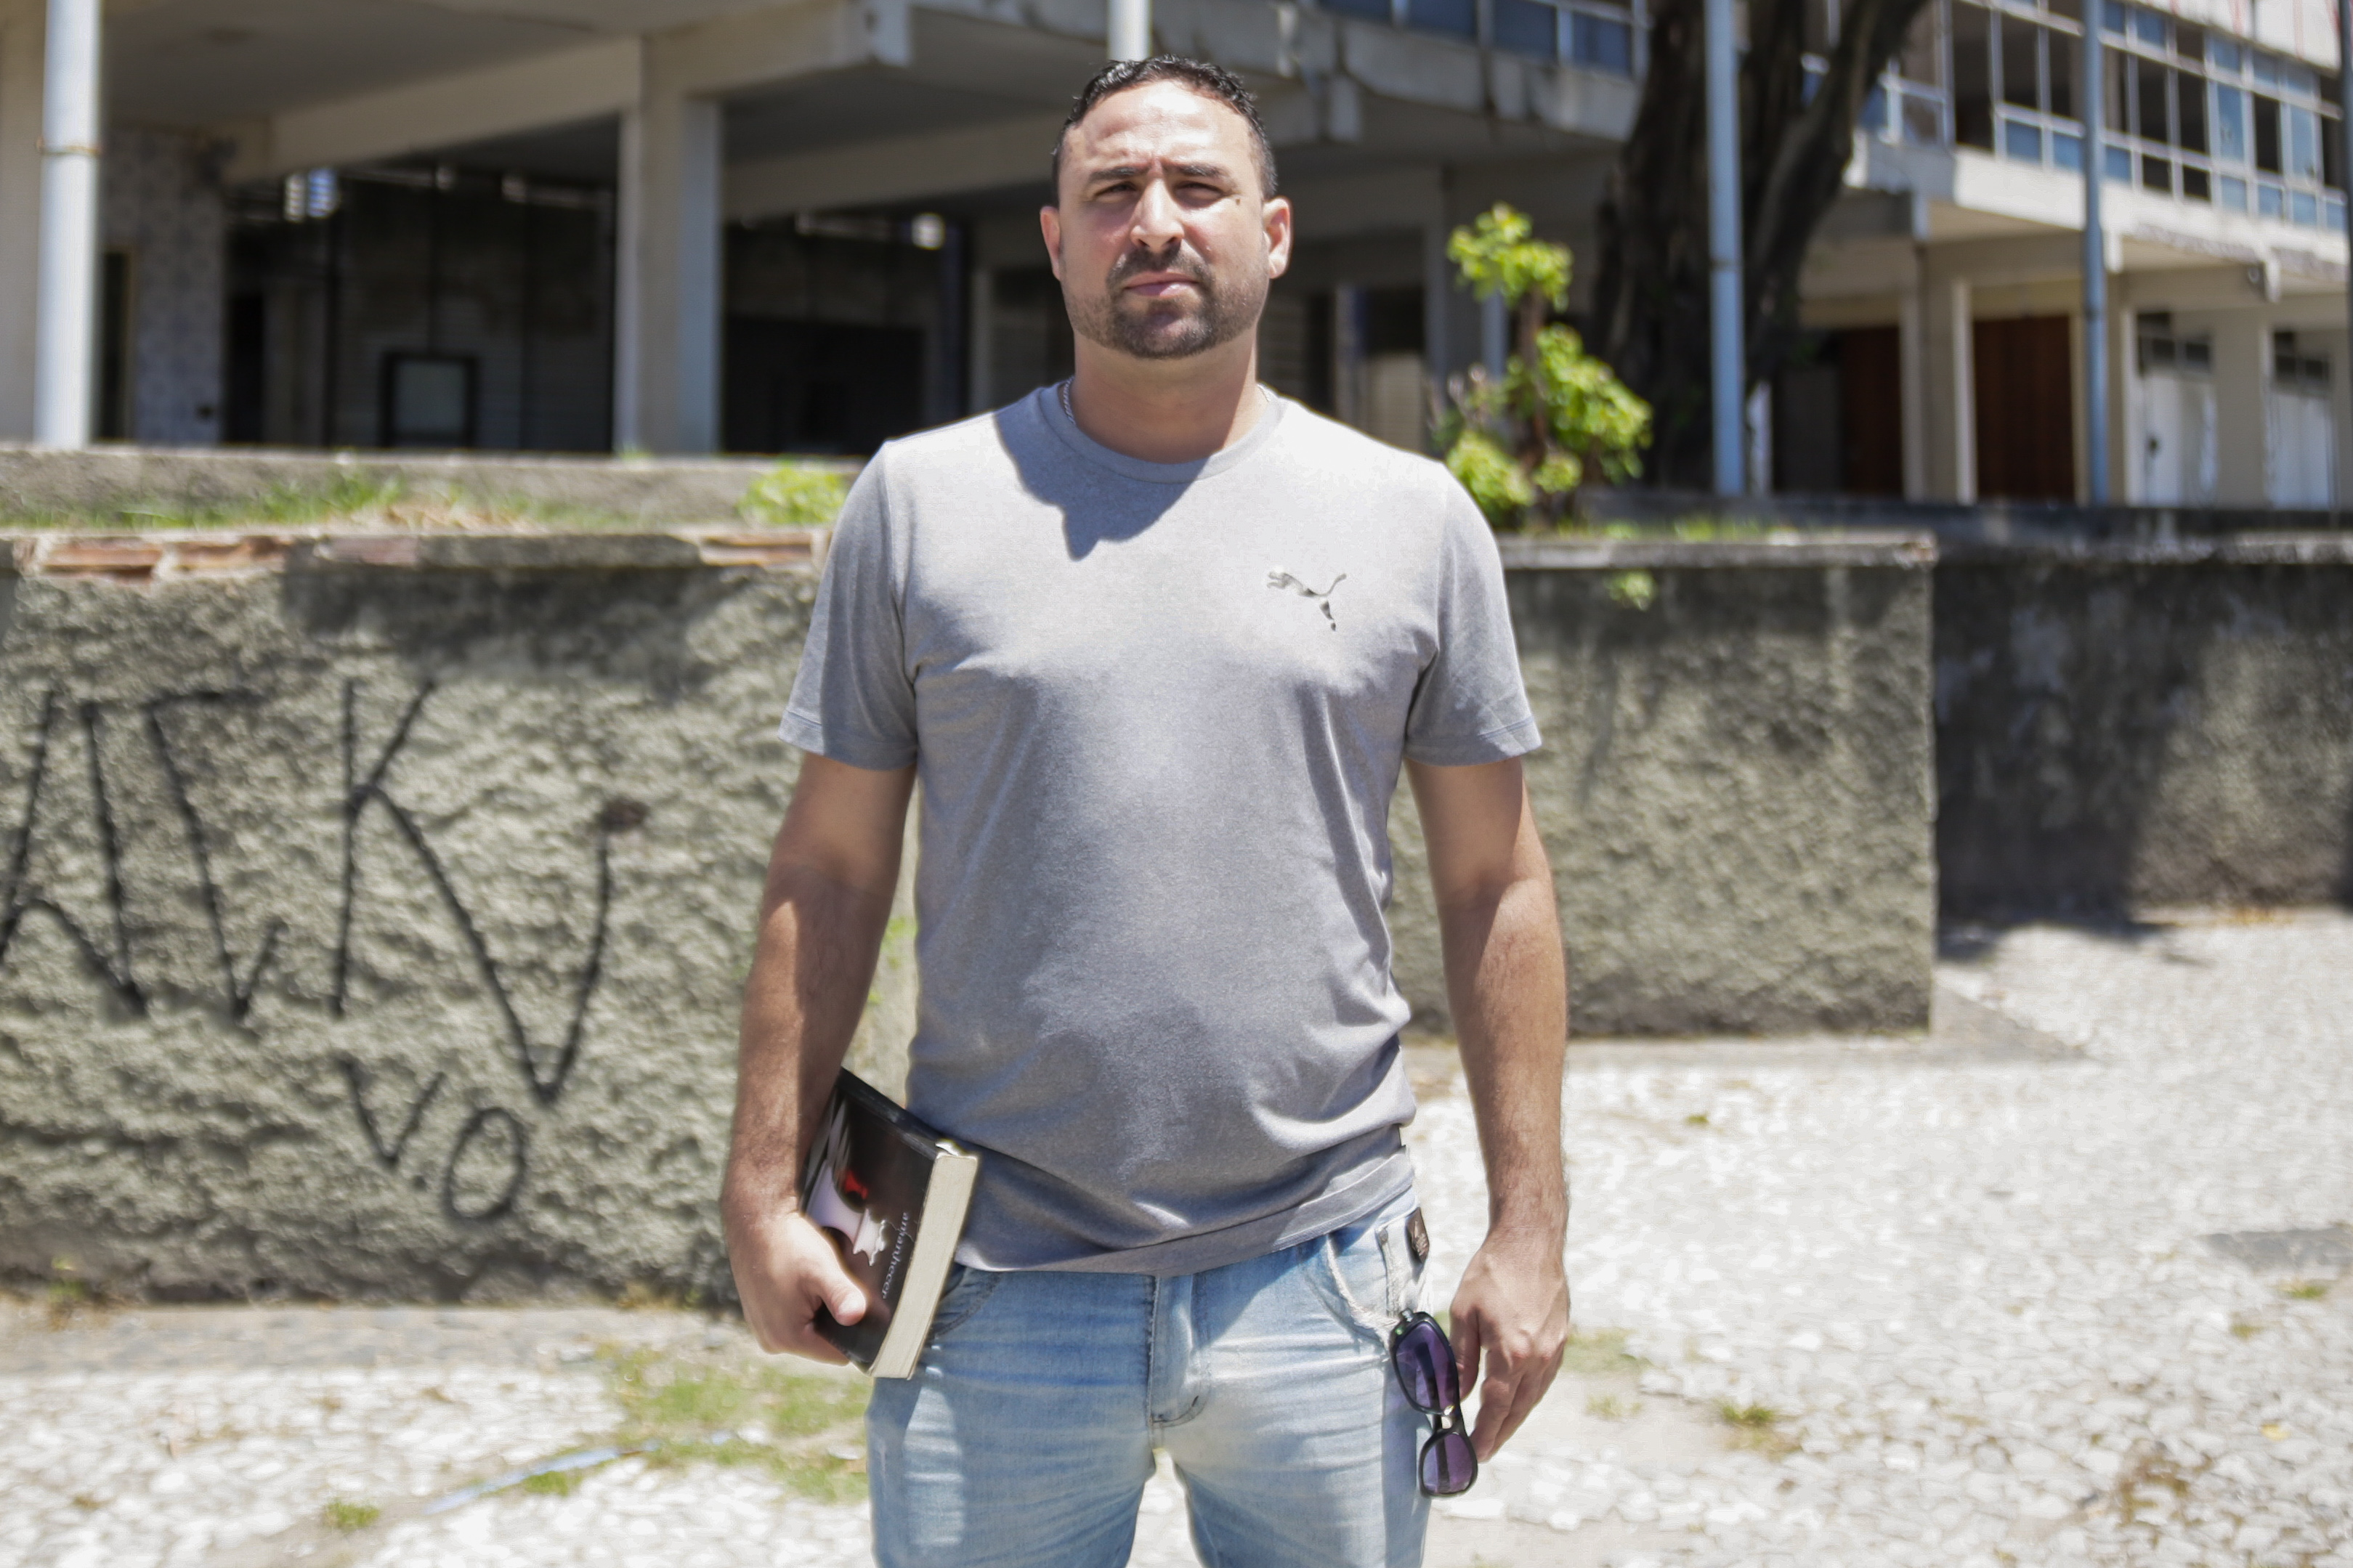 O vigilante Claiton Rosa, de 36 anos, apontou que o prédio póderia servir como alternativa de moradia para pessoas sem teto na cidade  (Rafael Vieira;DP)